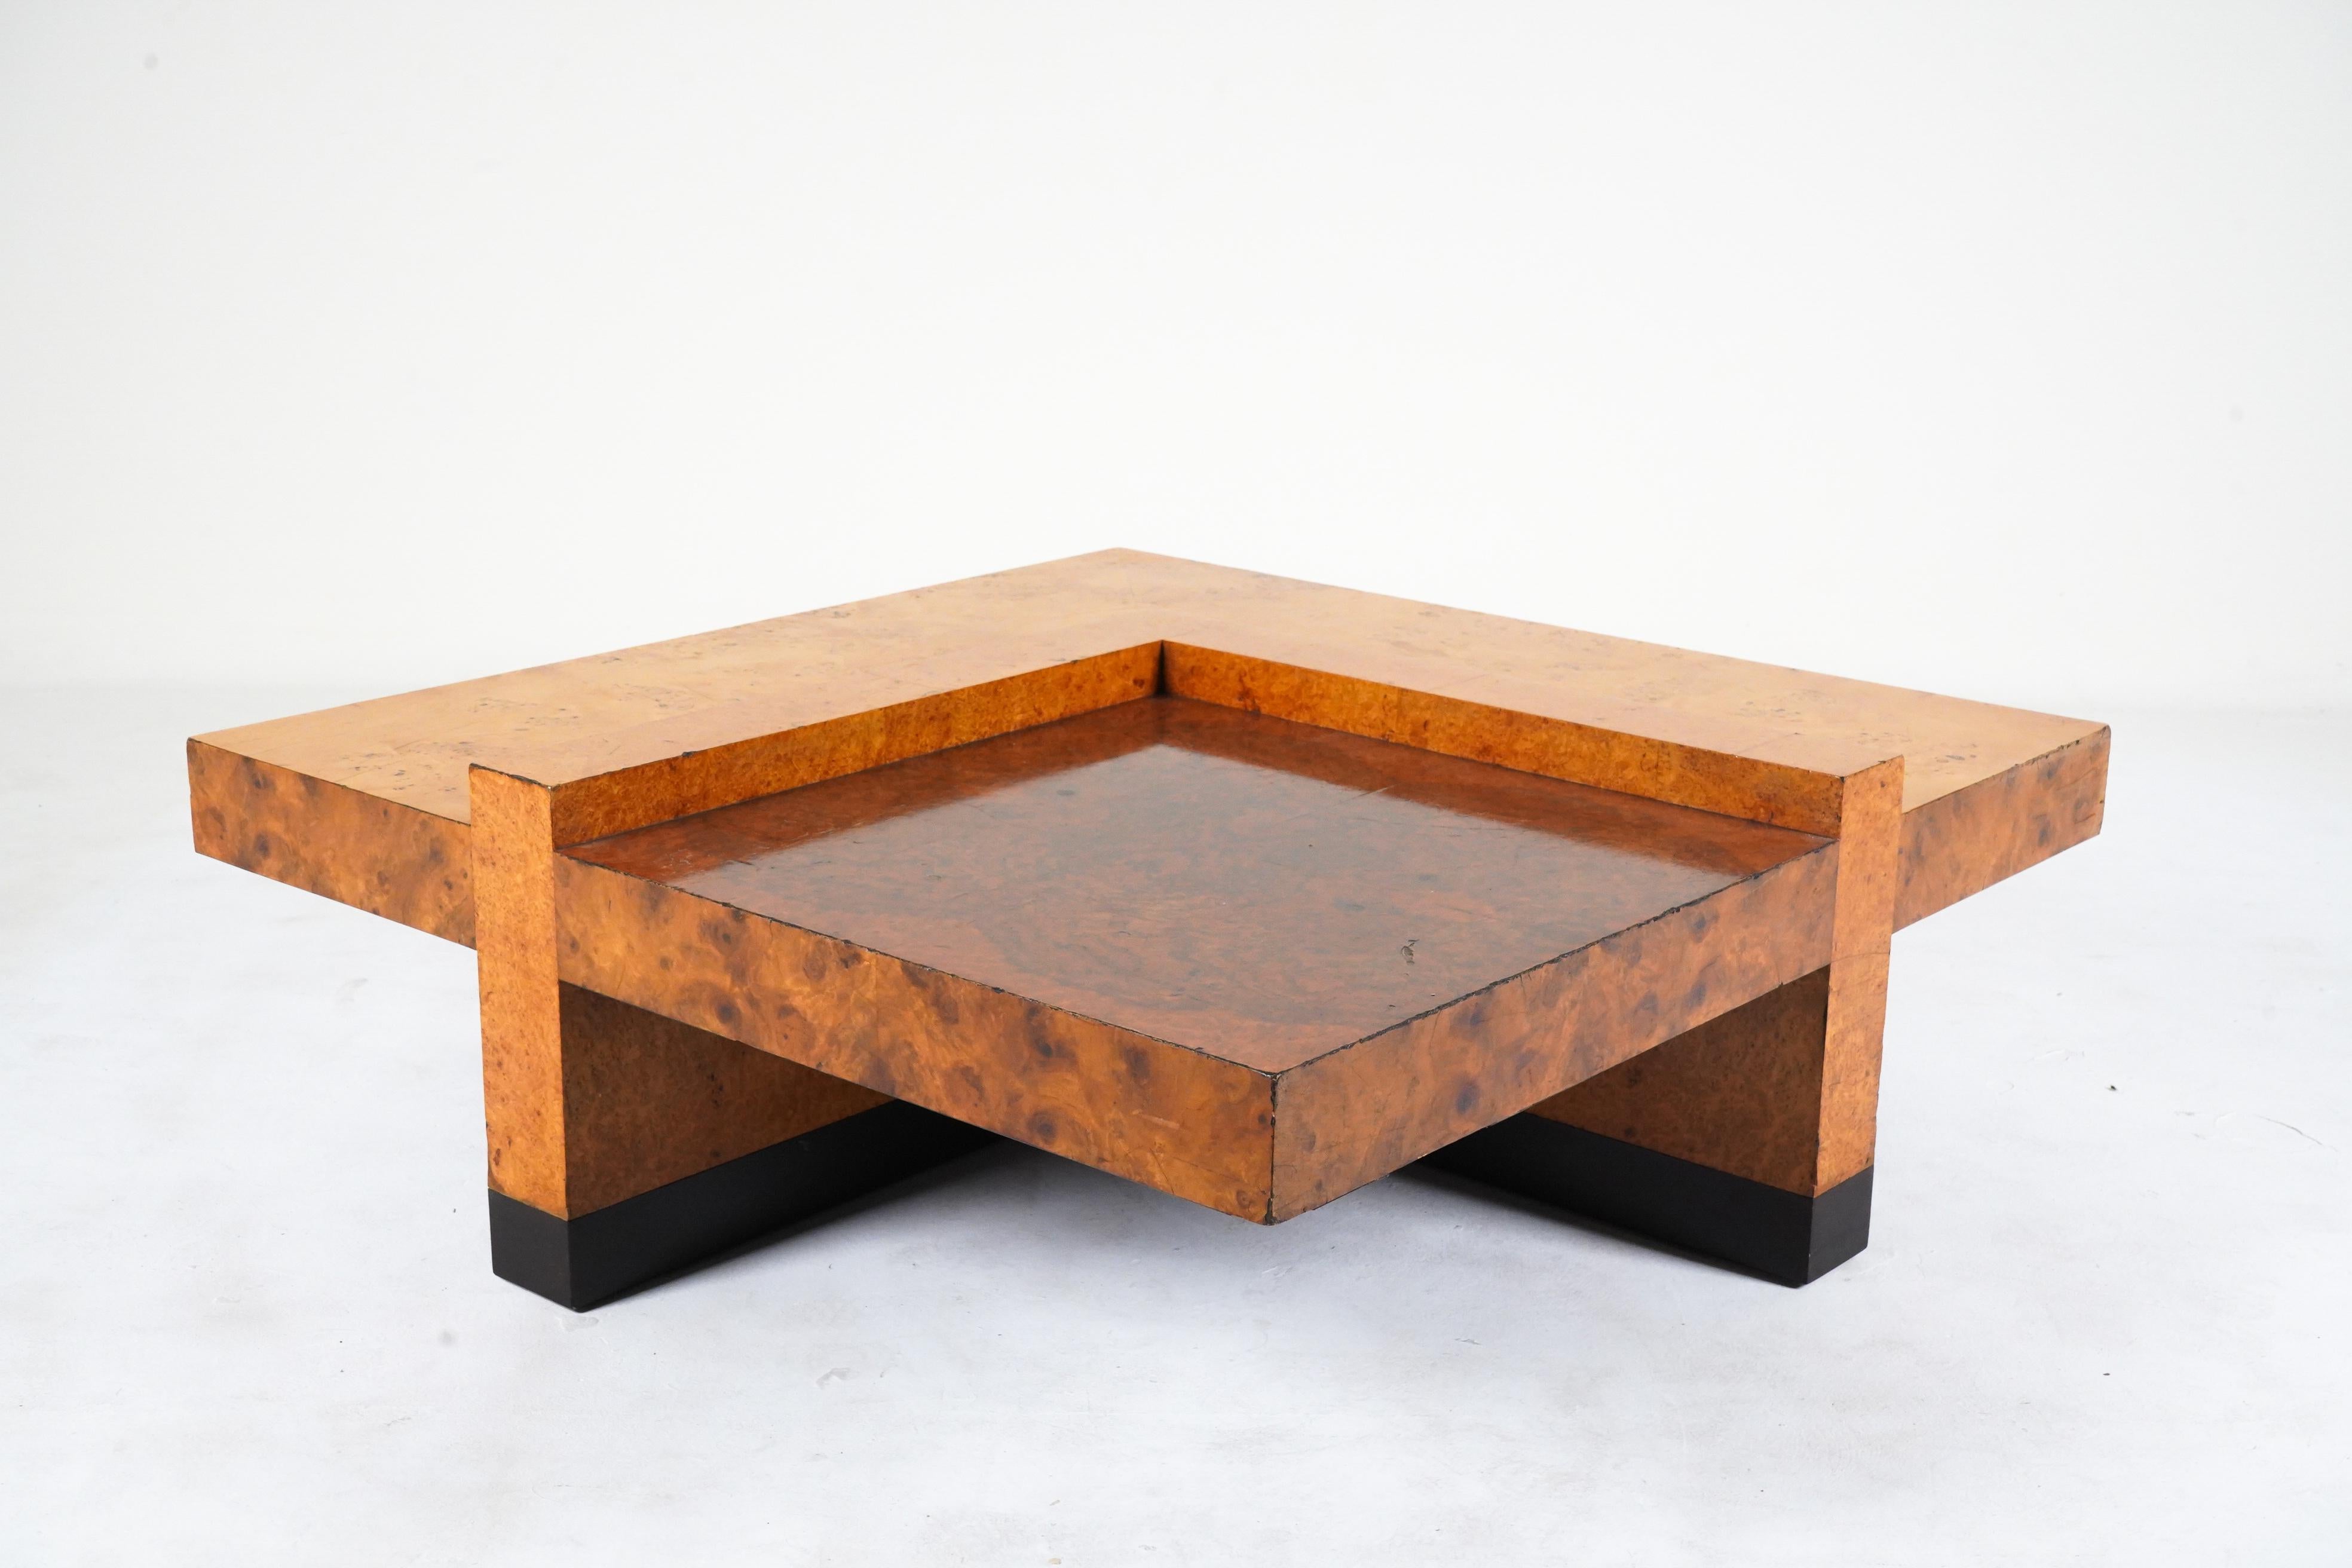 Table basse italienne du milieu du siècle, en placage de bois de chêne dans des tons contrastés. La loupe est très épaisse et solide et le design est rare. L'état de l'objet est celui d'une pièce d'époque, avec des rayures, des ébréchures et des